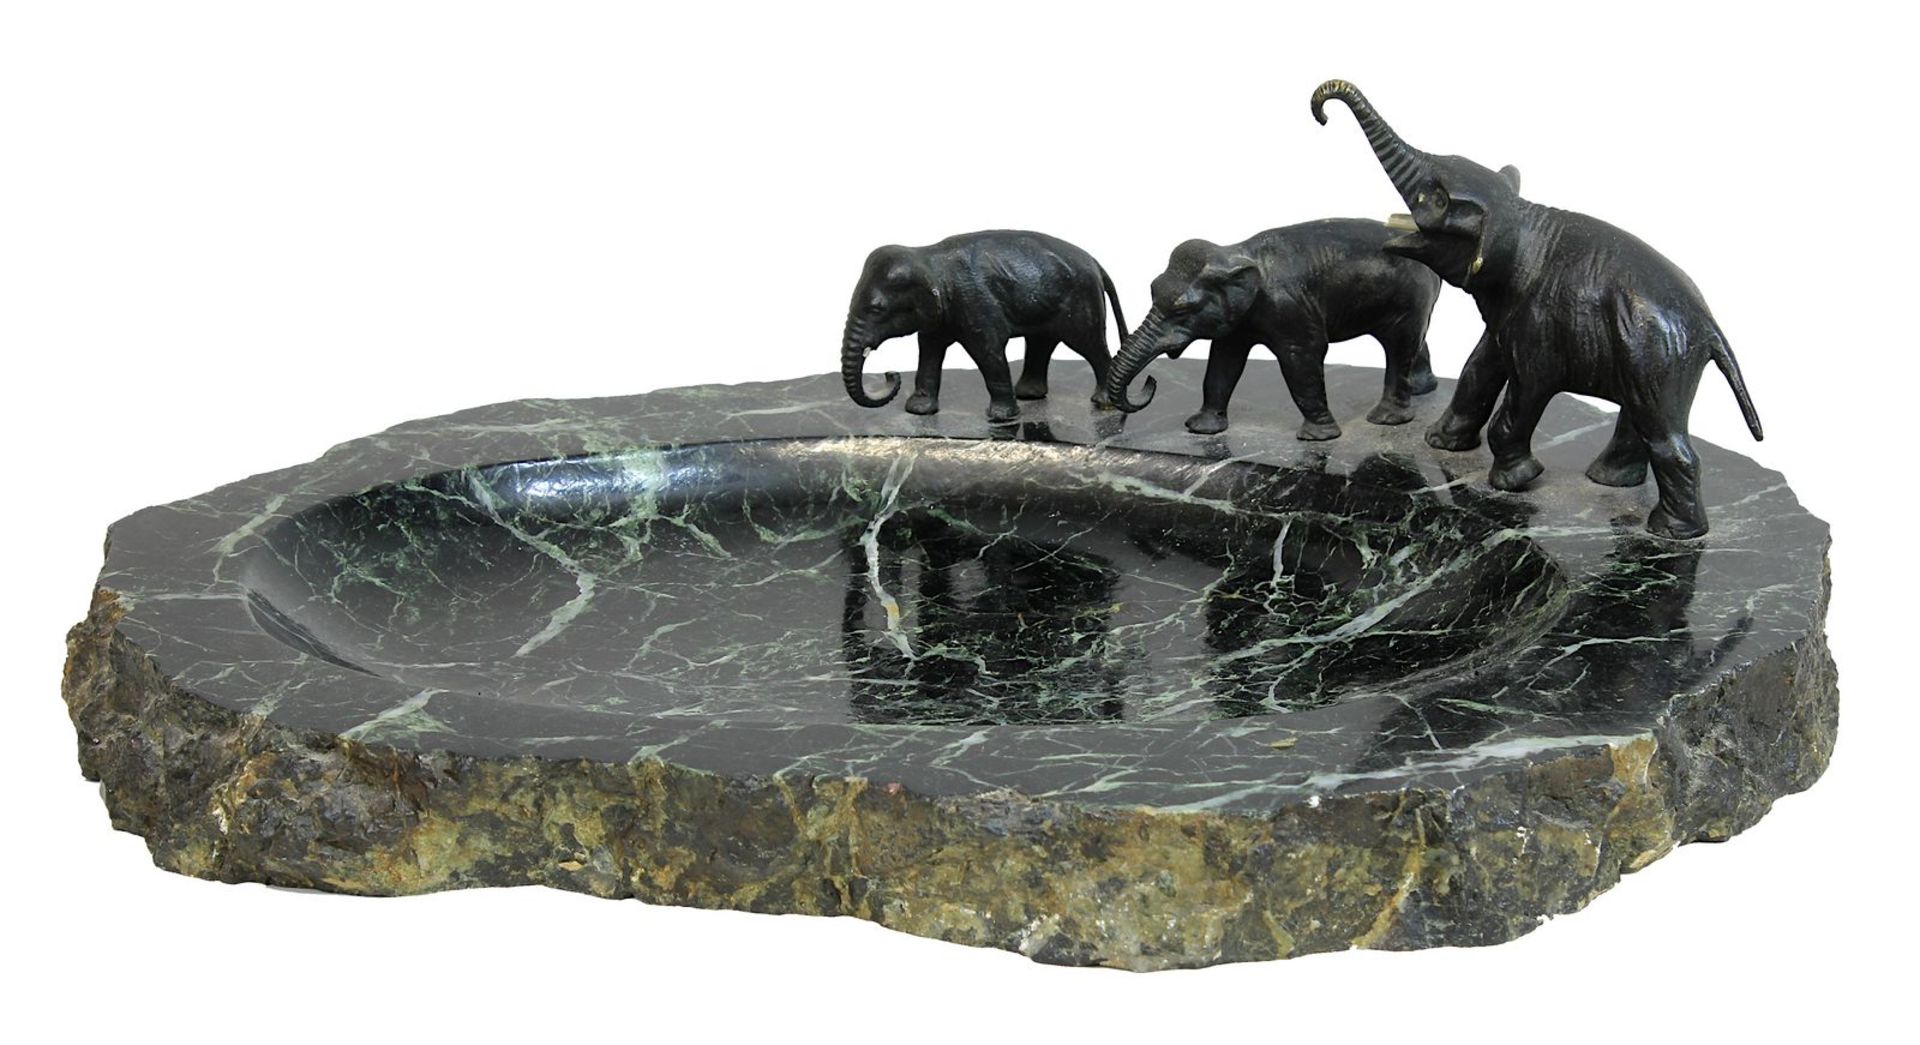 Marmorschale mit Elefanten-Gruppe aus Bronze, Deutschland um 1900, beim großen Elefanten fehlt ein